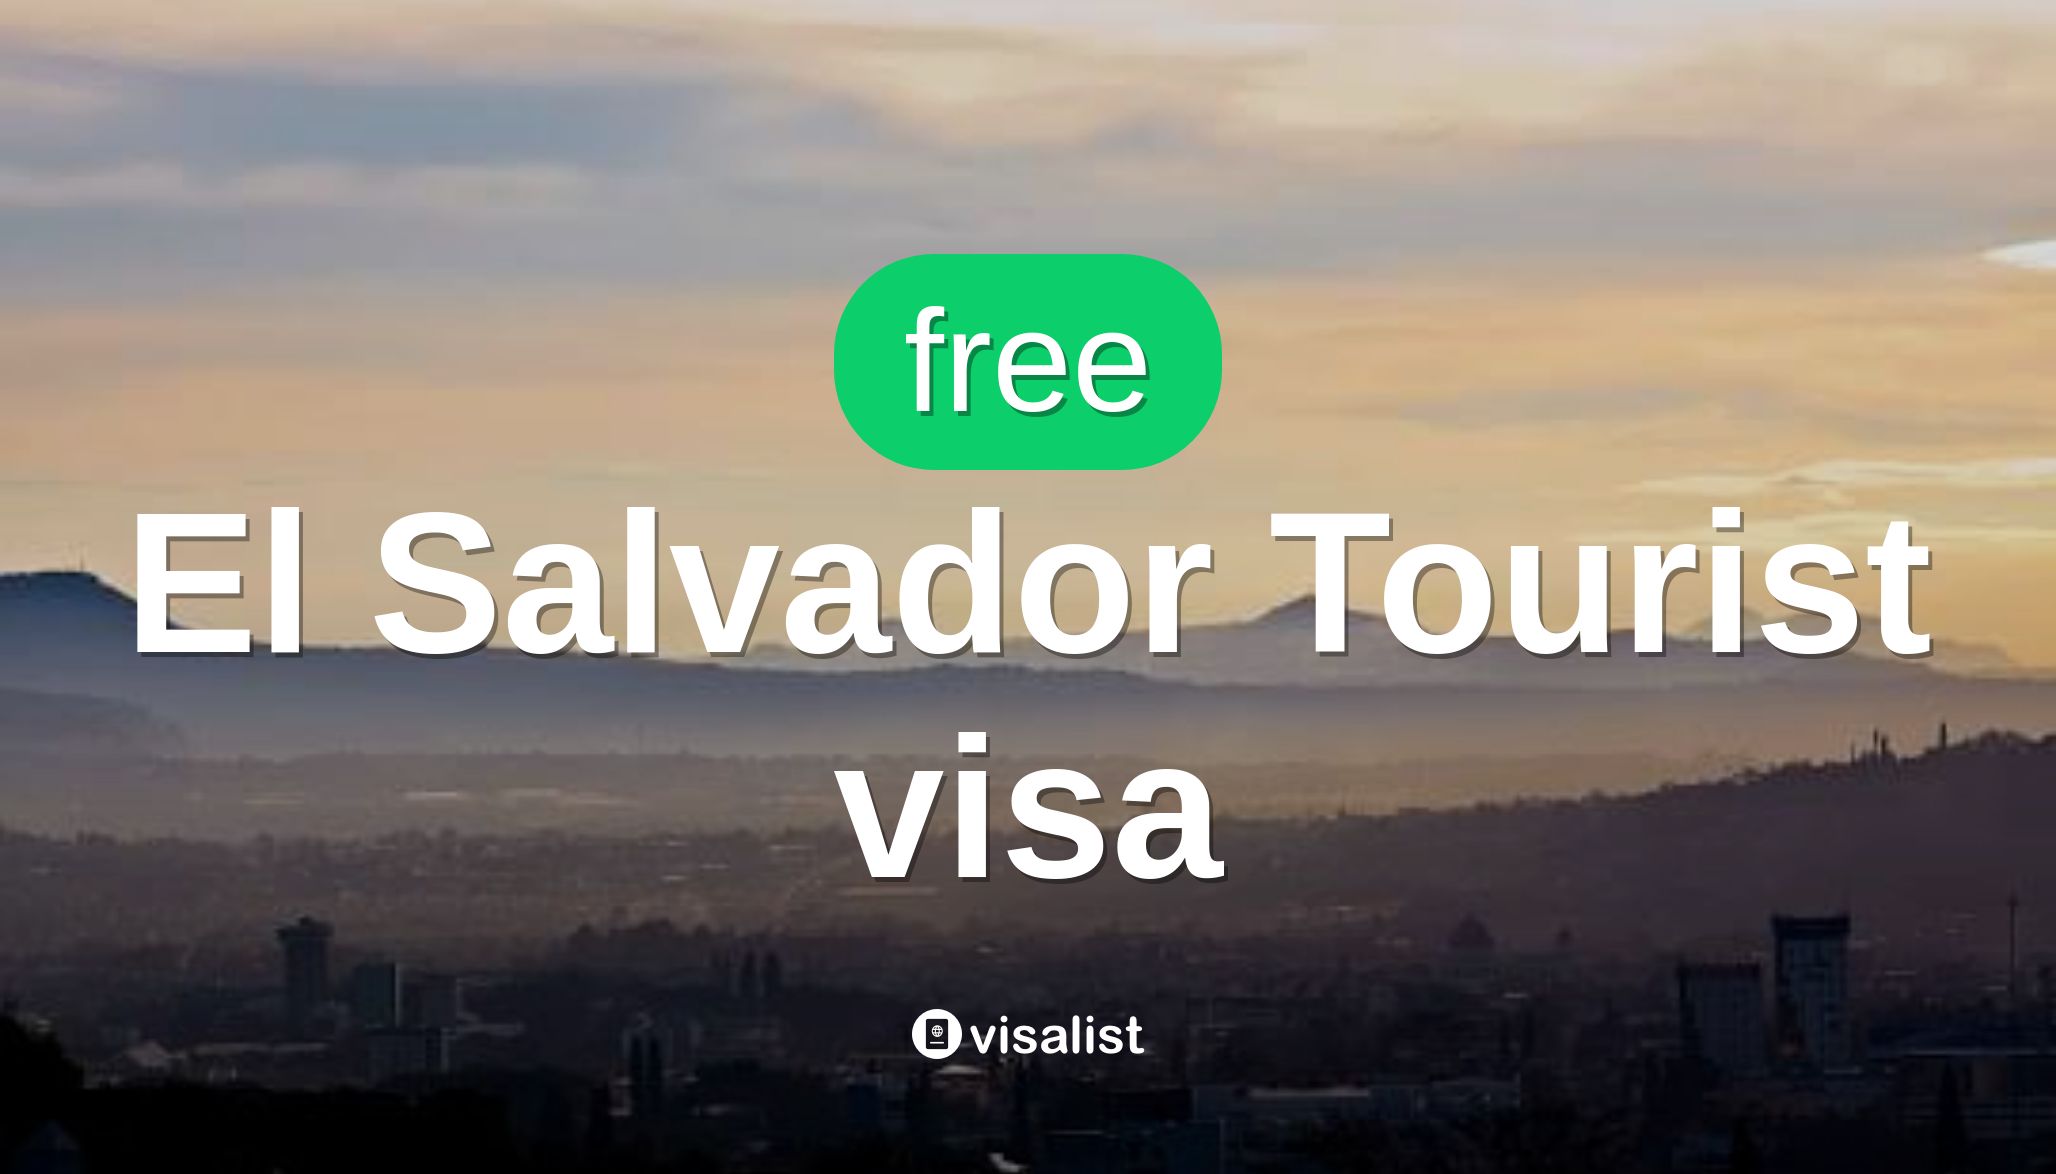 el salvador tourist visa requirements for indian citizens